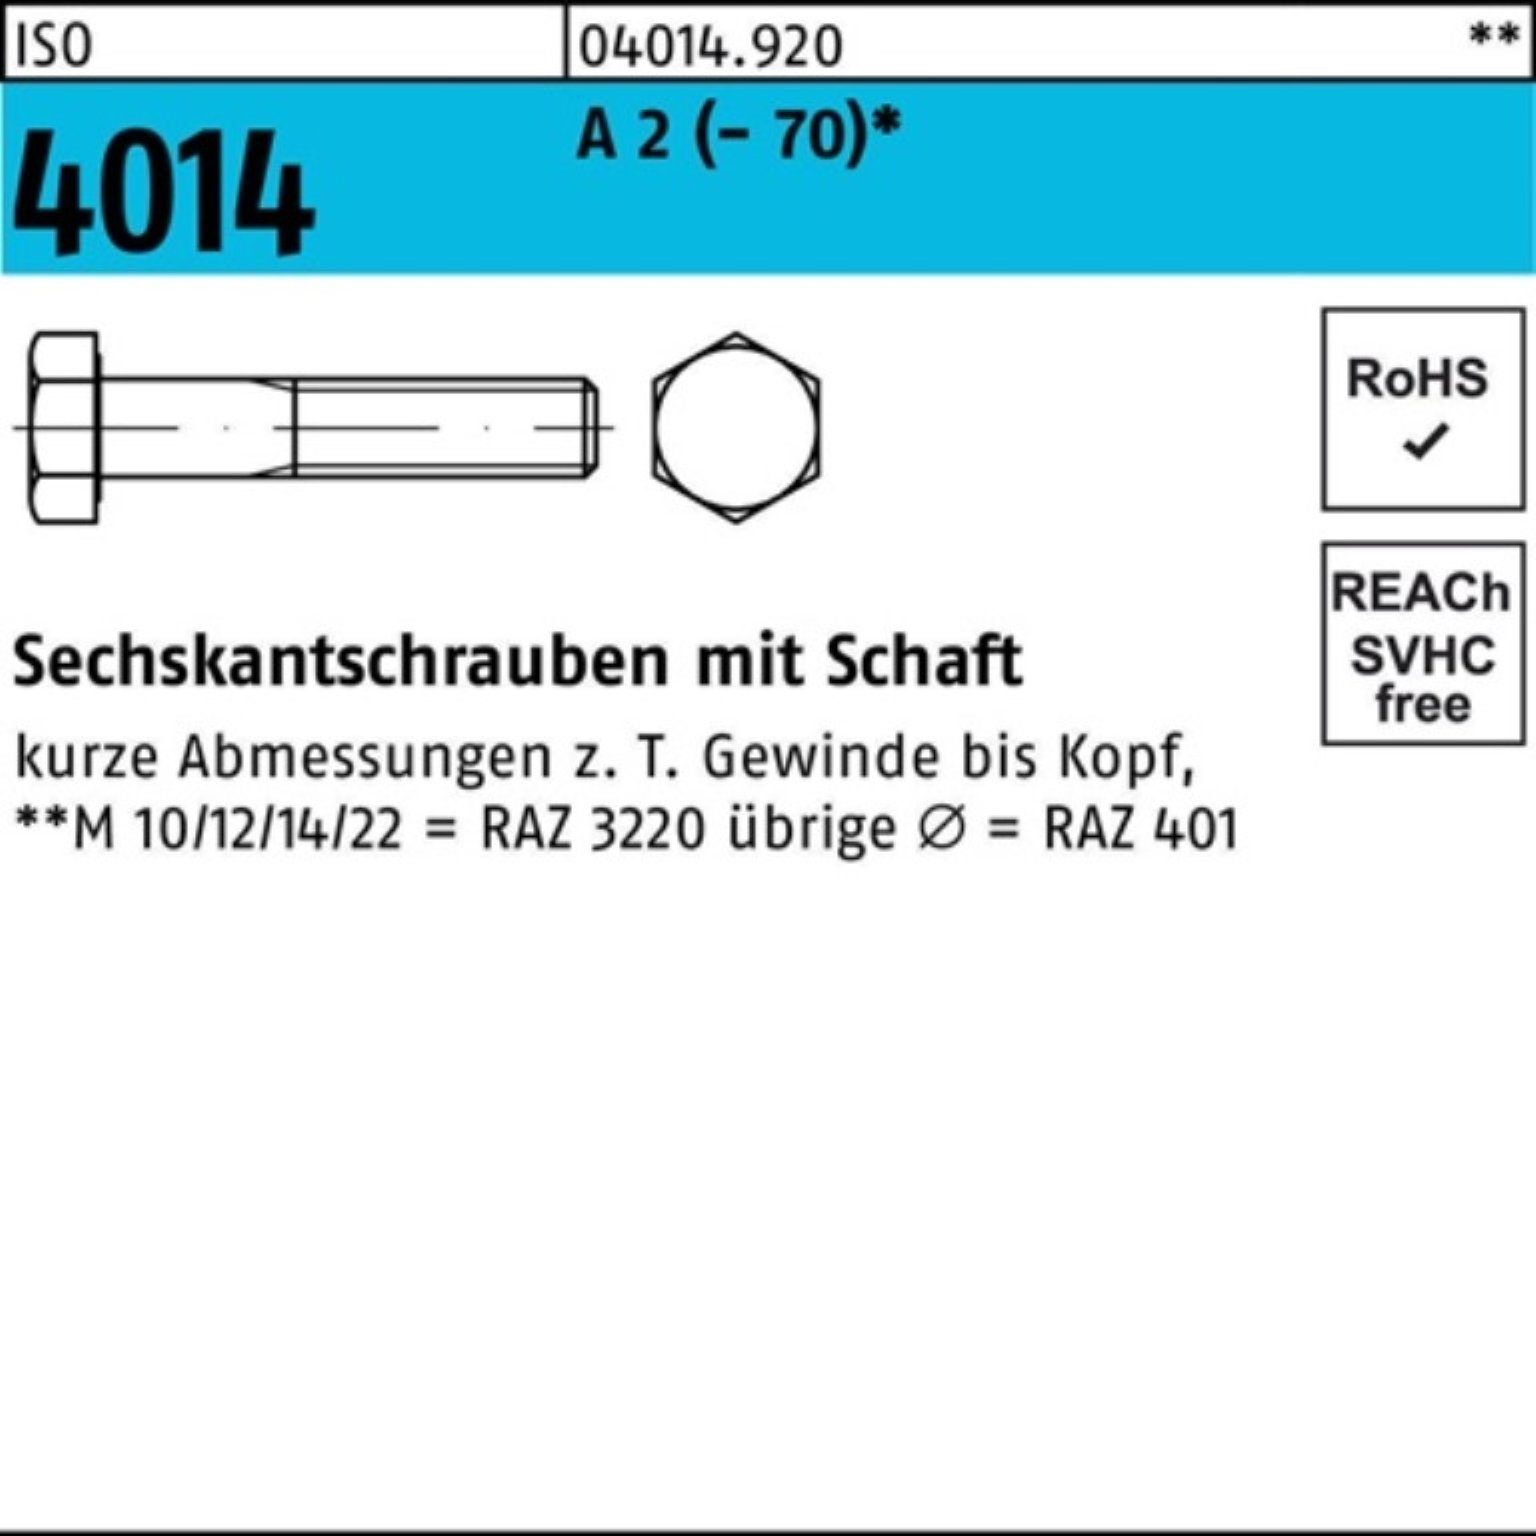 Bufab Sechskantschraube 100er Pack Sechskantschraube ISO 4014 Schaft M12x 140 A 2 (70) 1 St